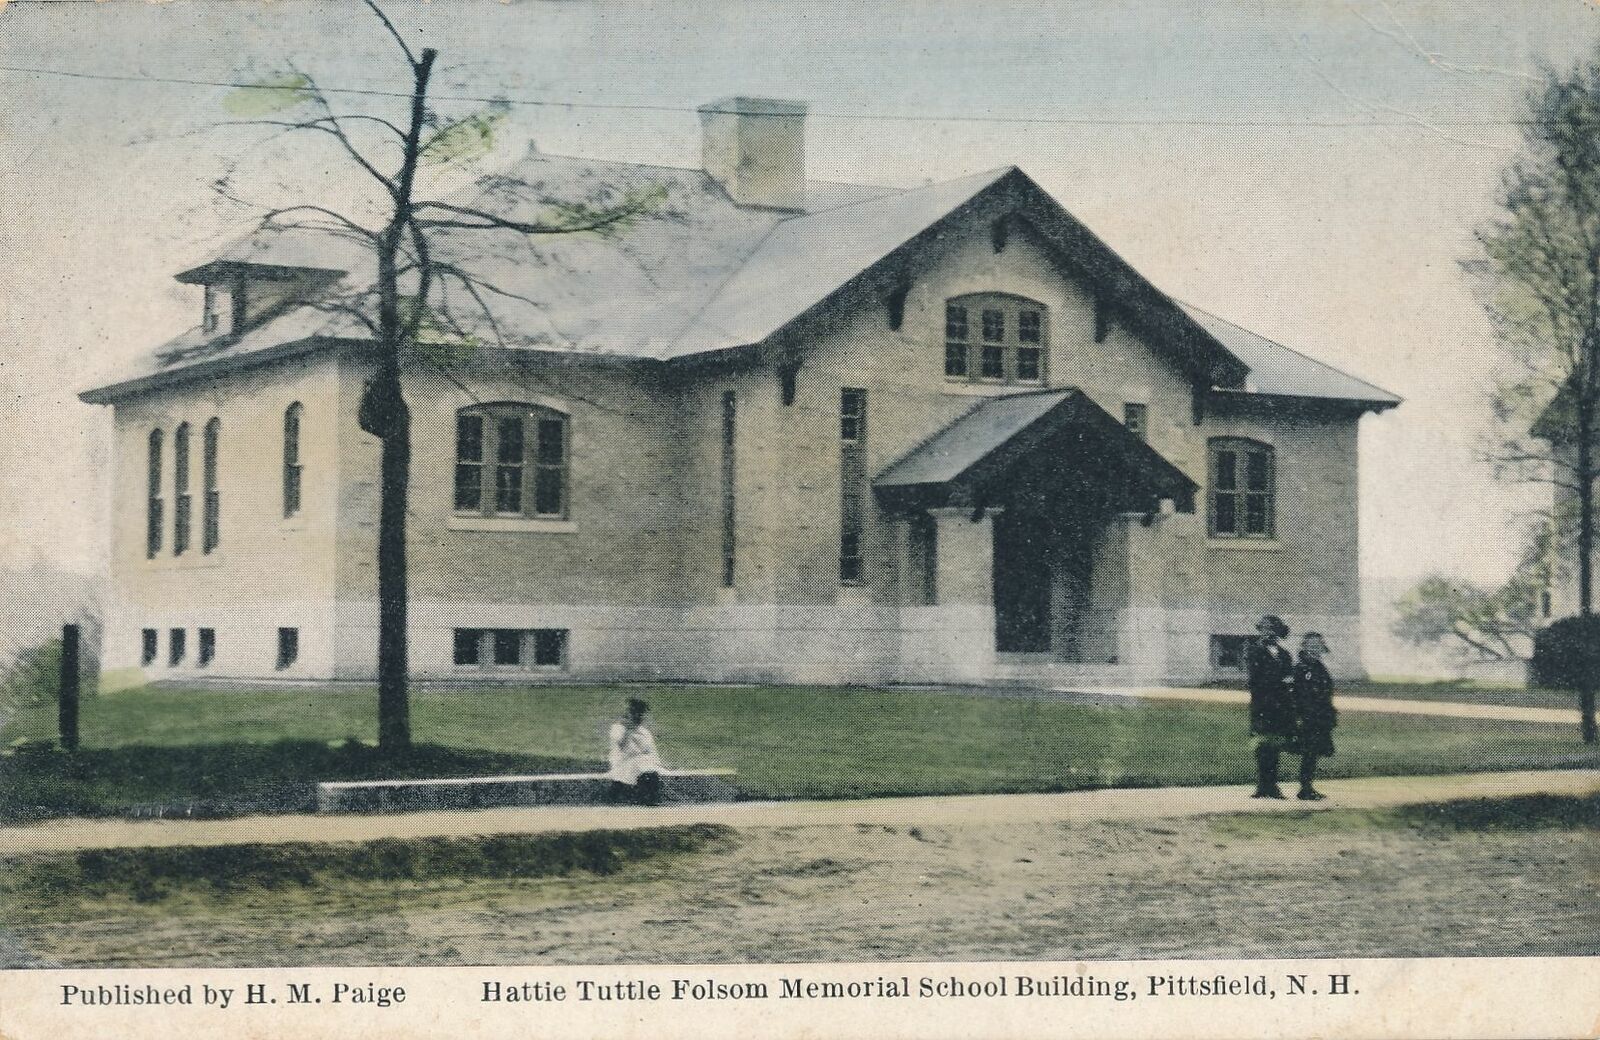 PITTSFIELD NH - Hattie Tuttle Folsom Memorial School Building